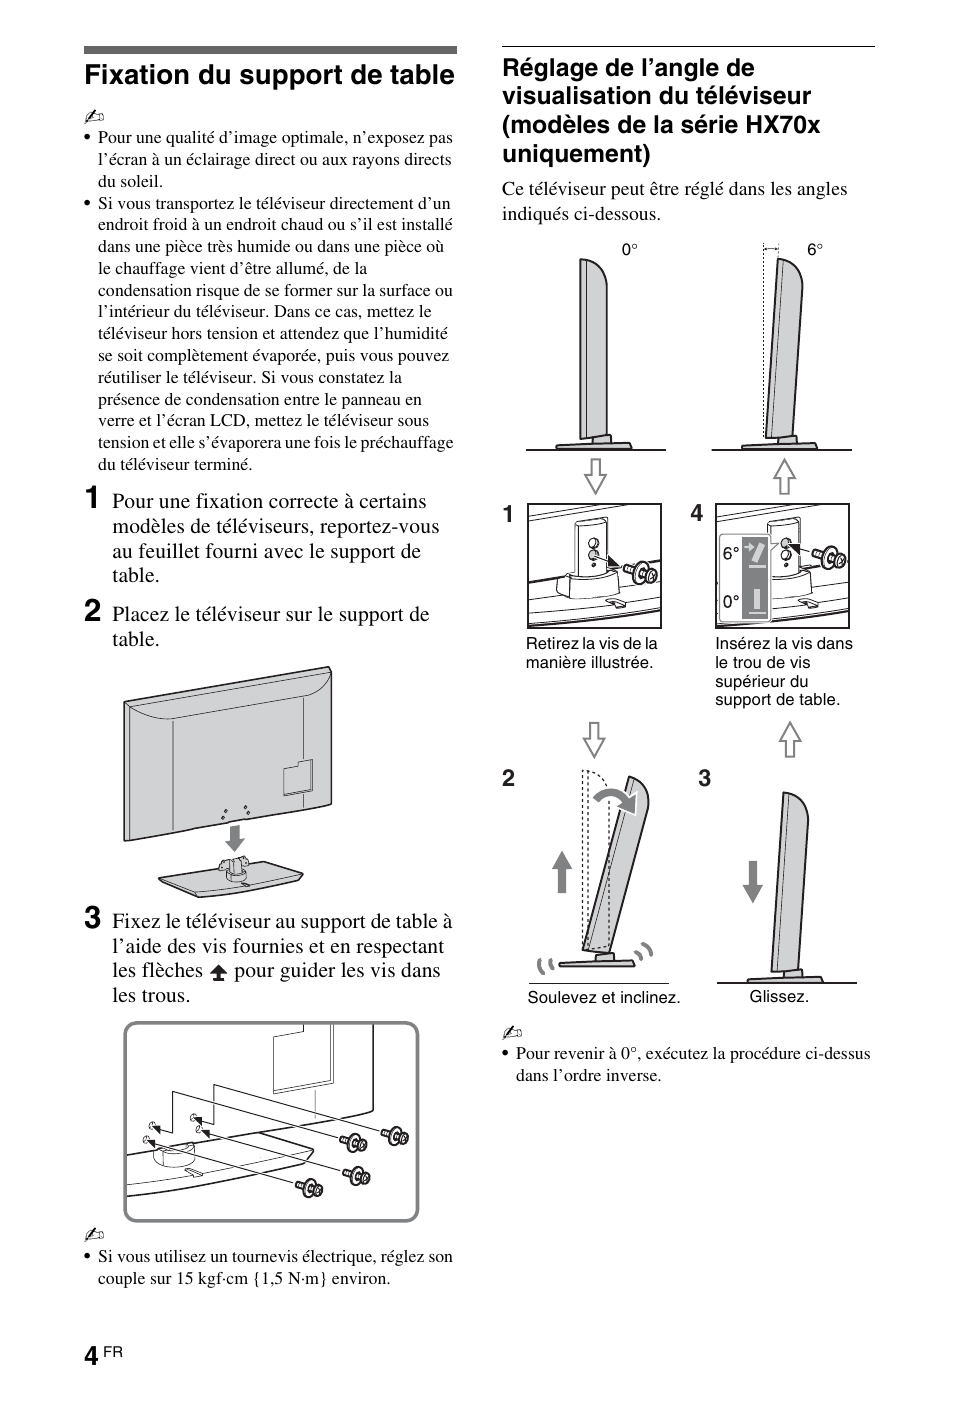 Installation, Fixation du support de table | Sony KDL-37EX503 Benutzerhandbuch | Seite 4 / 332